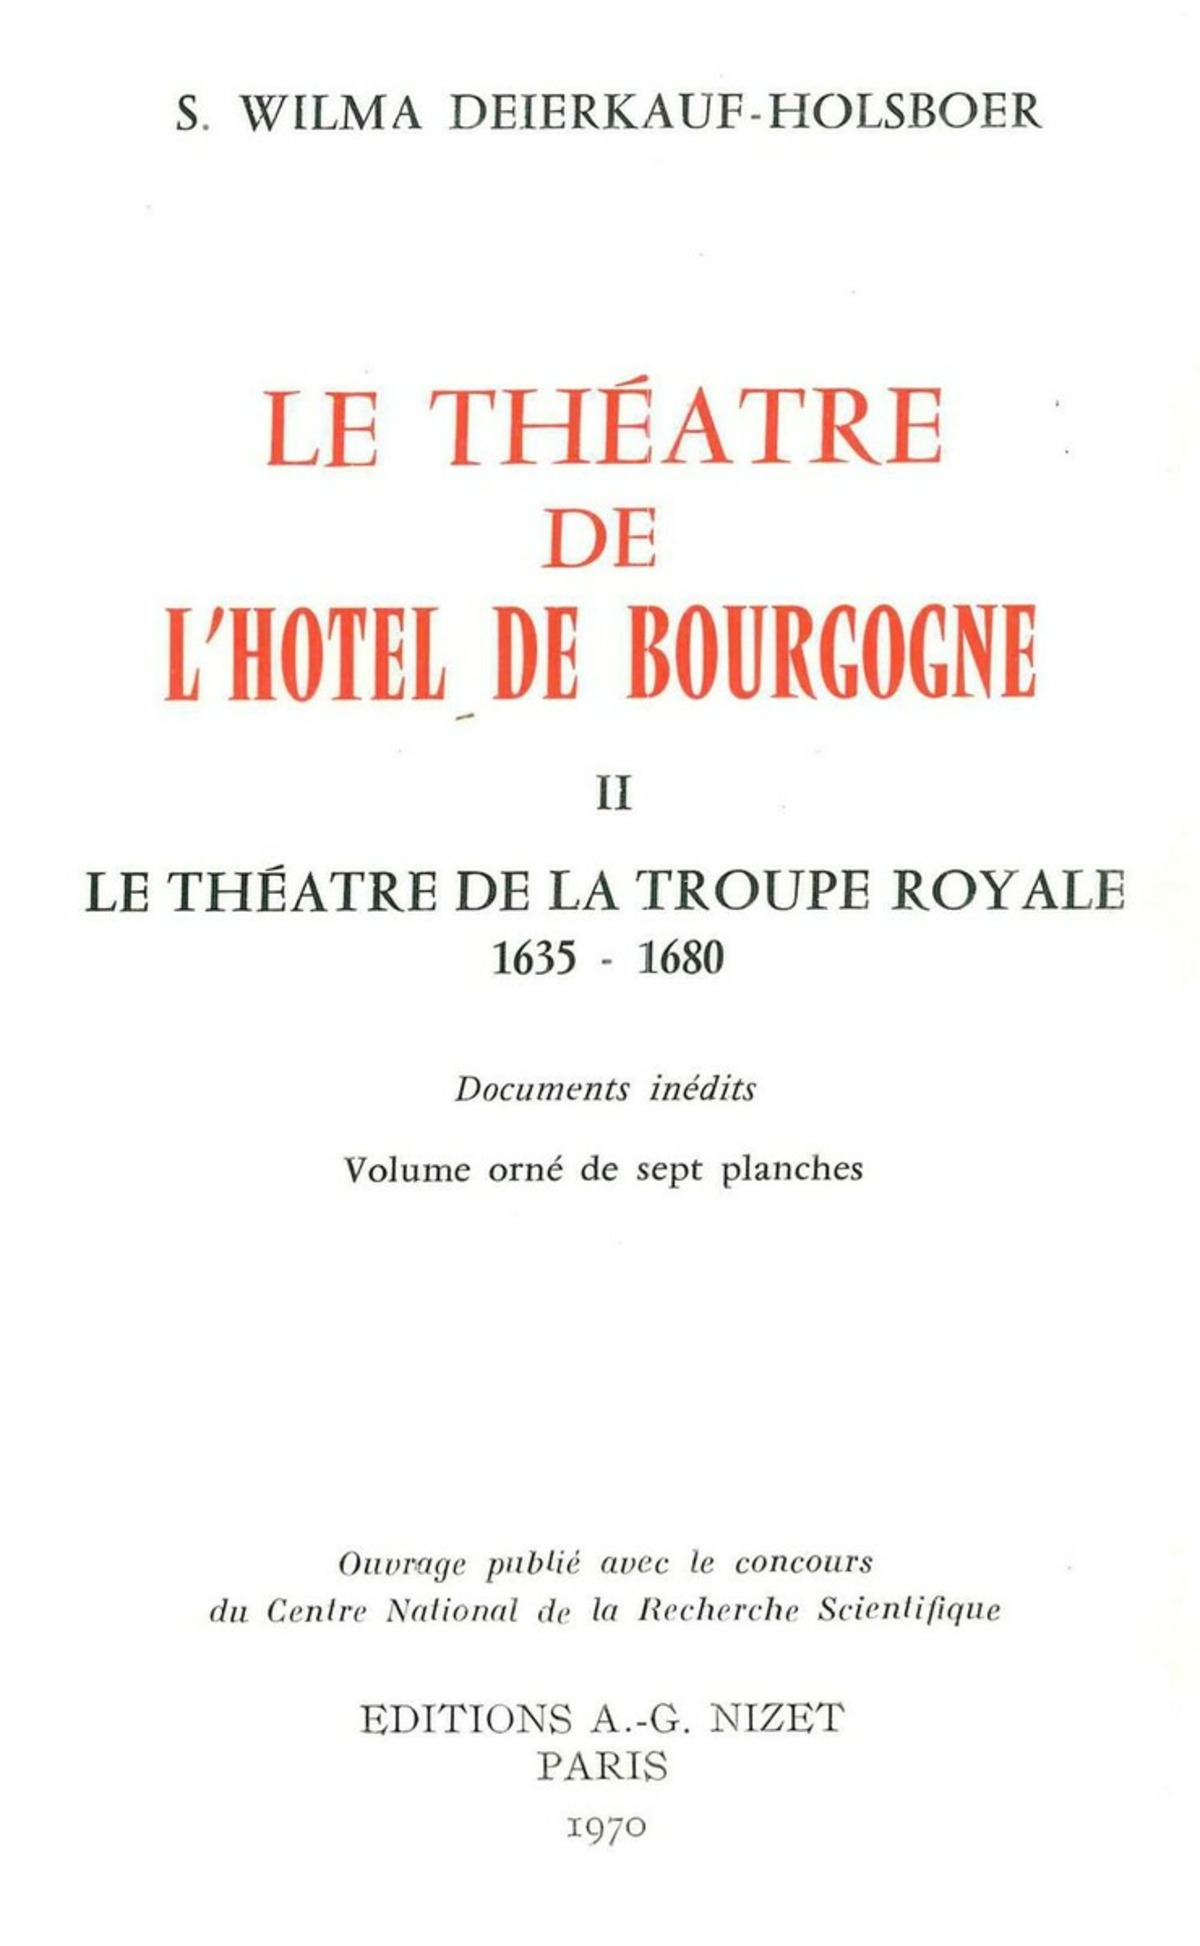 Le Théâtre de l'Hôtel de Bourgogne